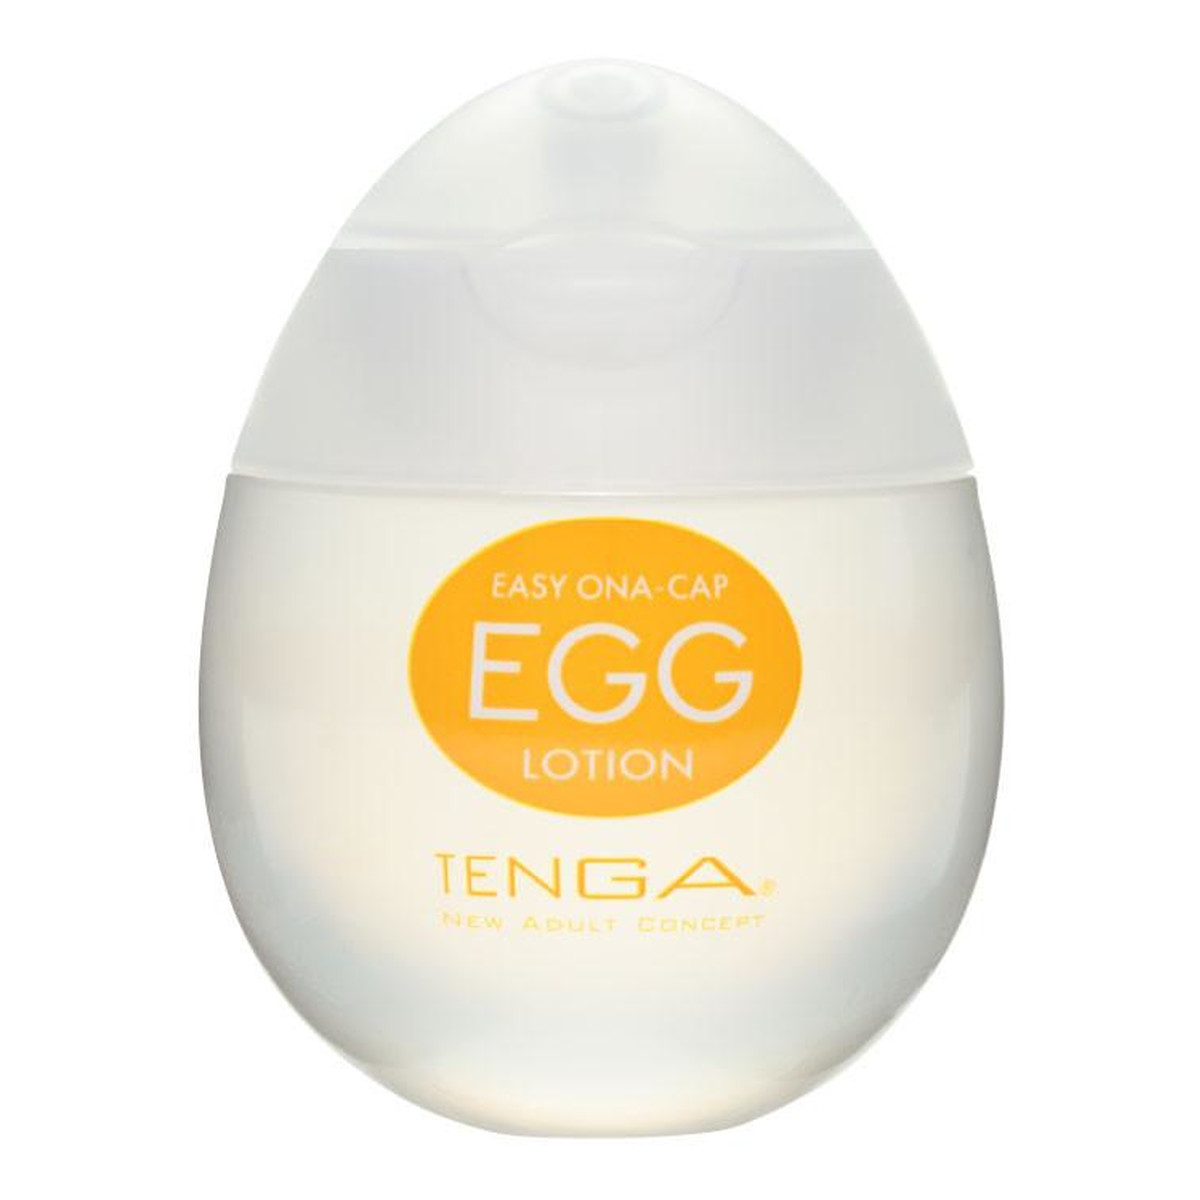 Tenga Easy ona-cap egg lotion nawilżający lubrykant na bazie wody 65ml